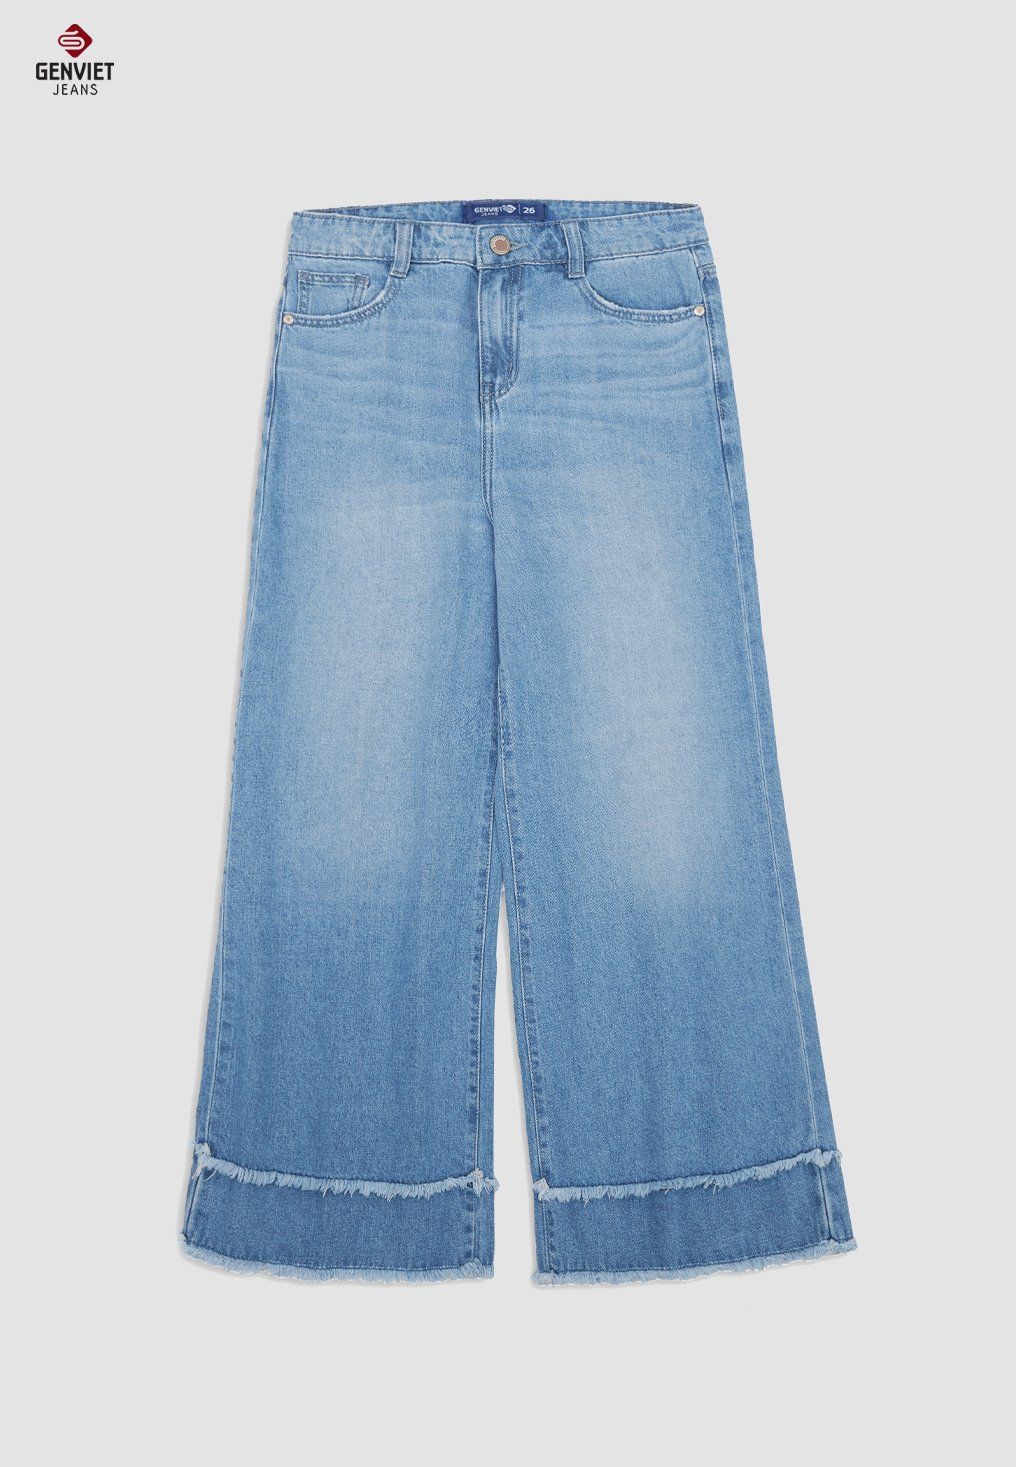  Quần Dài Nữ Jeans Suông Thời Trang XQ124J8525 